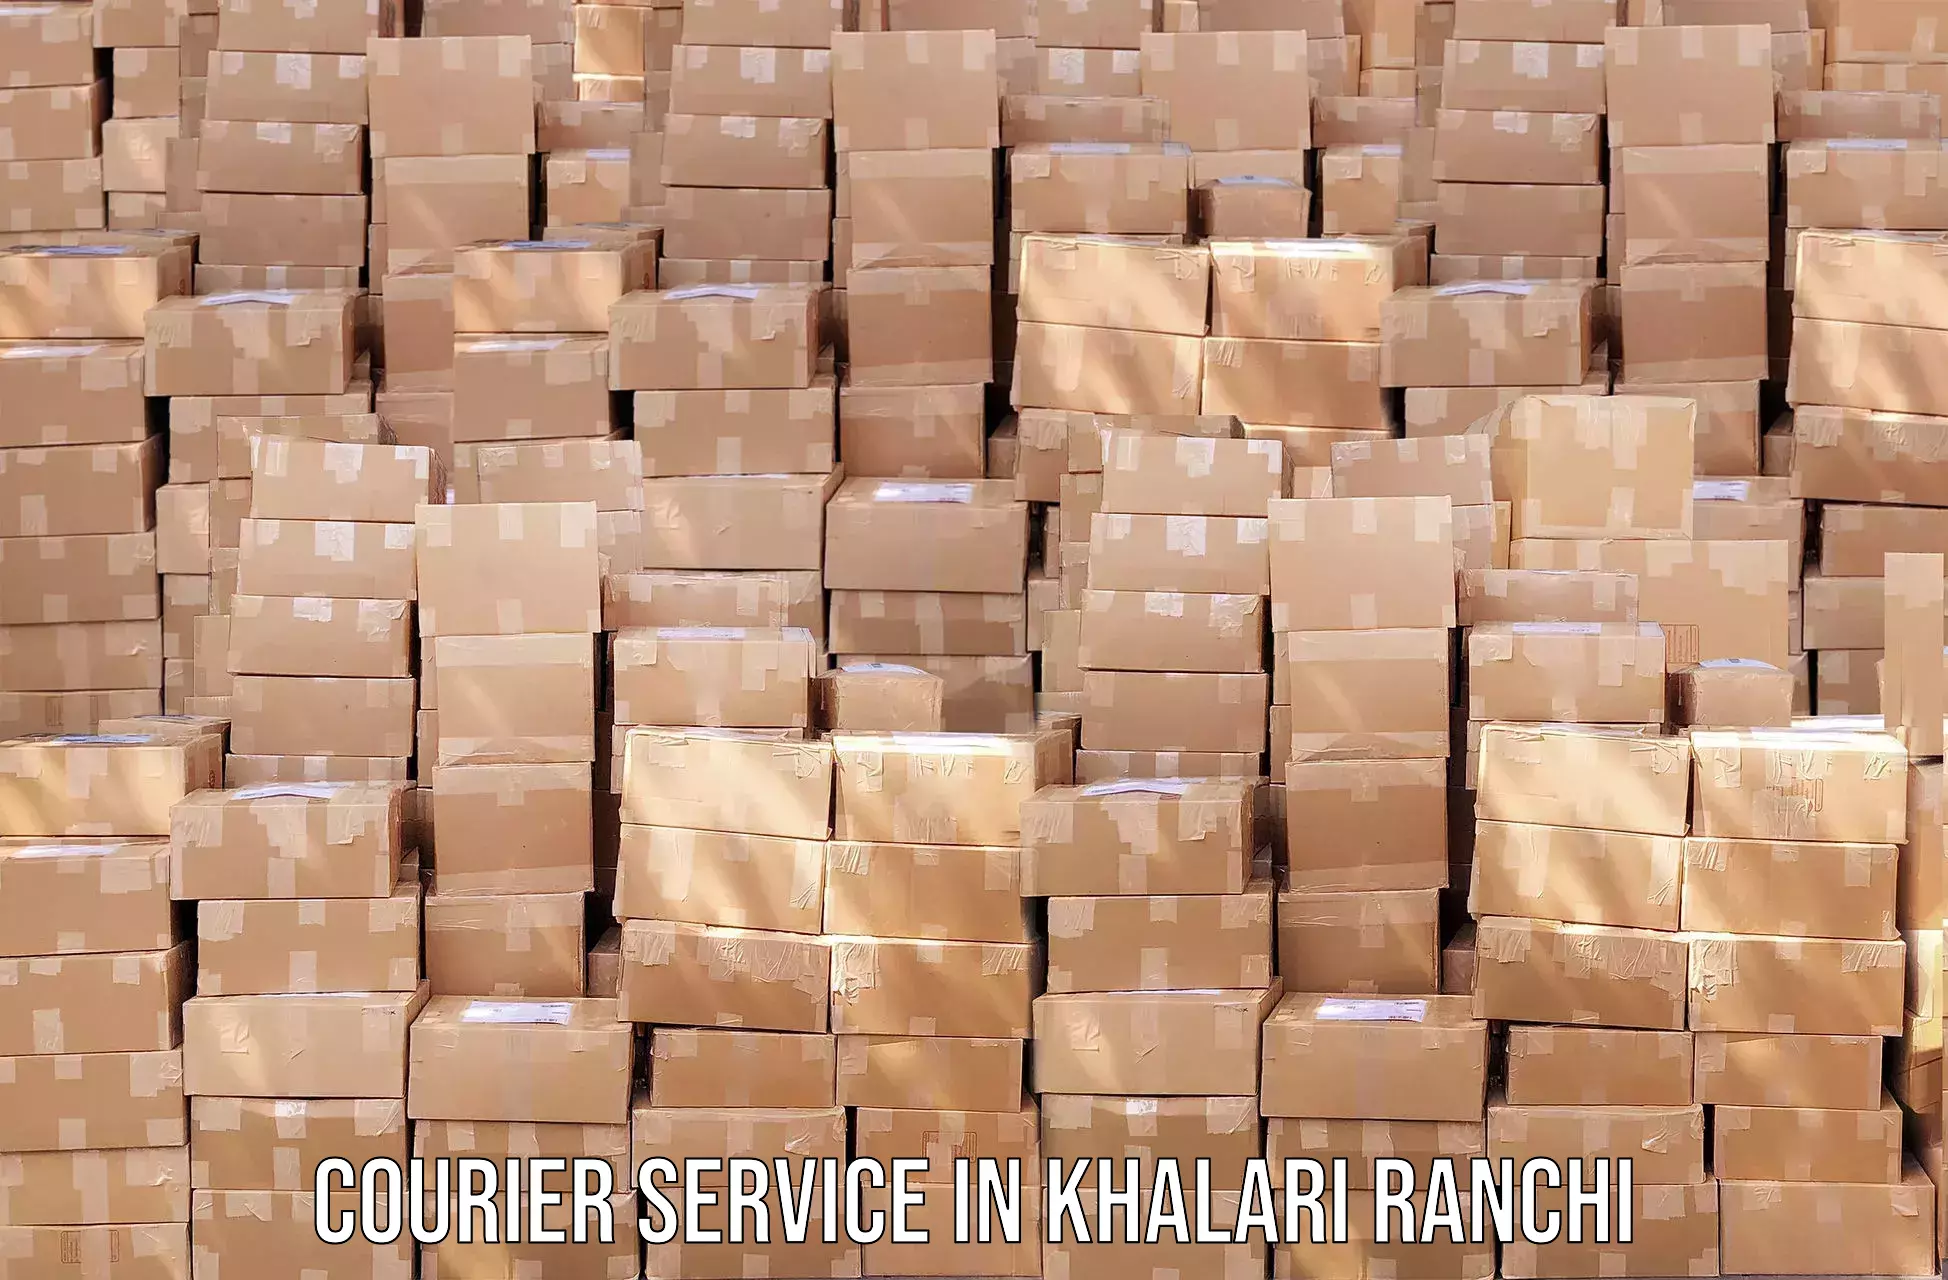 Express mail solutions in Khalari Ranchi